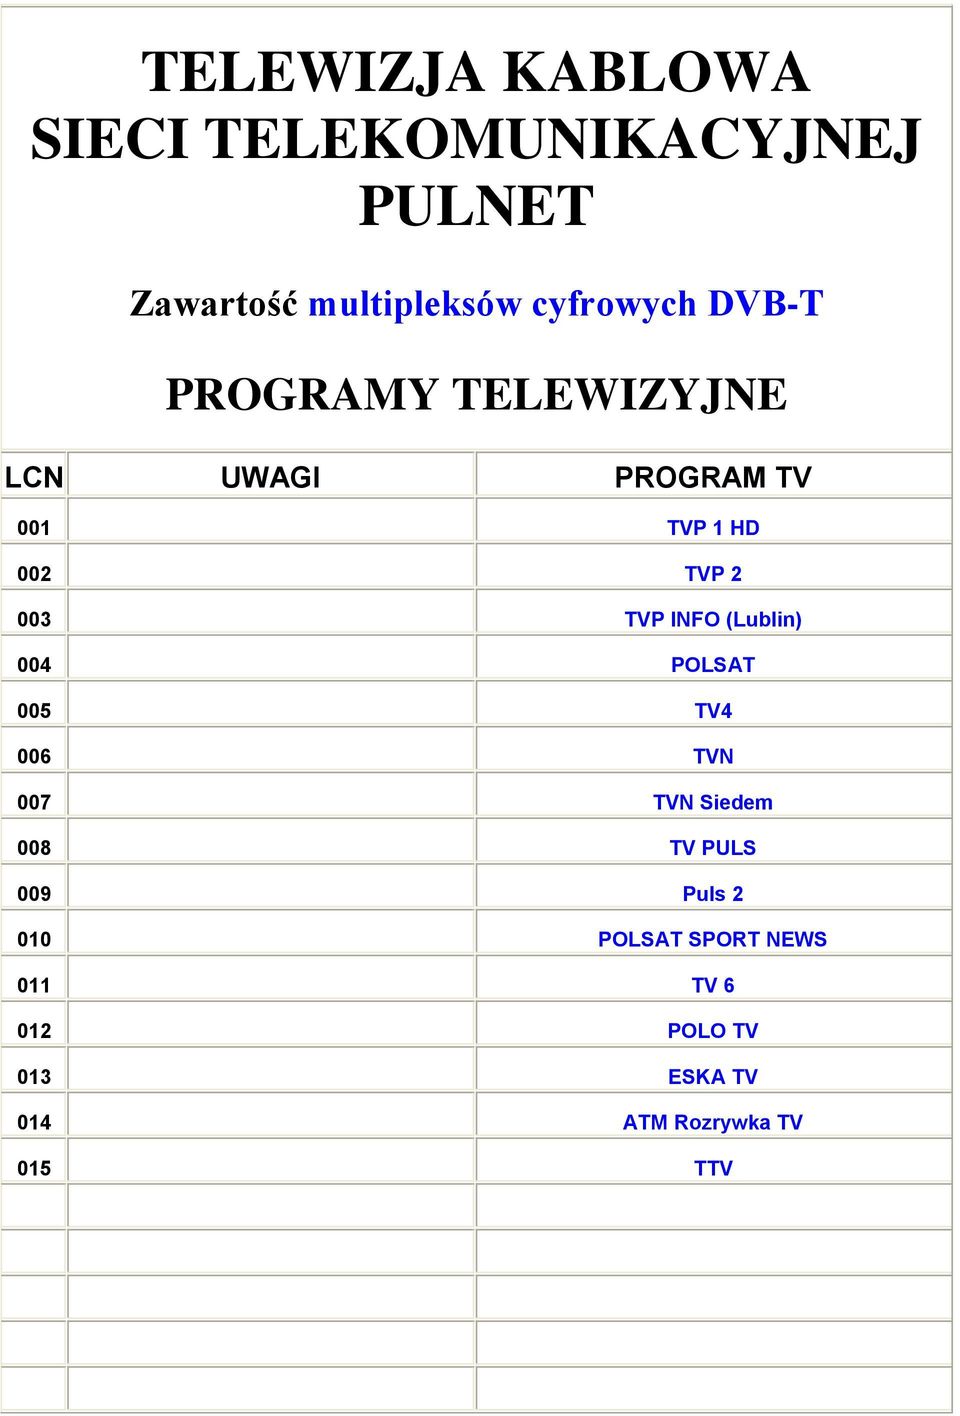 003 TVP INFO (Lublin) 004 POLSAT 005 TV4 006 TVN 007 TVN Siedem 008 TV PULS 009